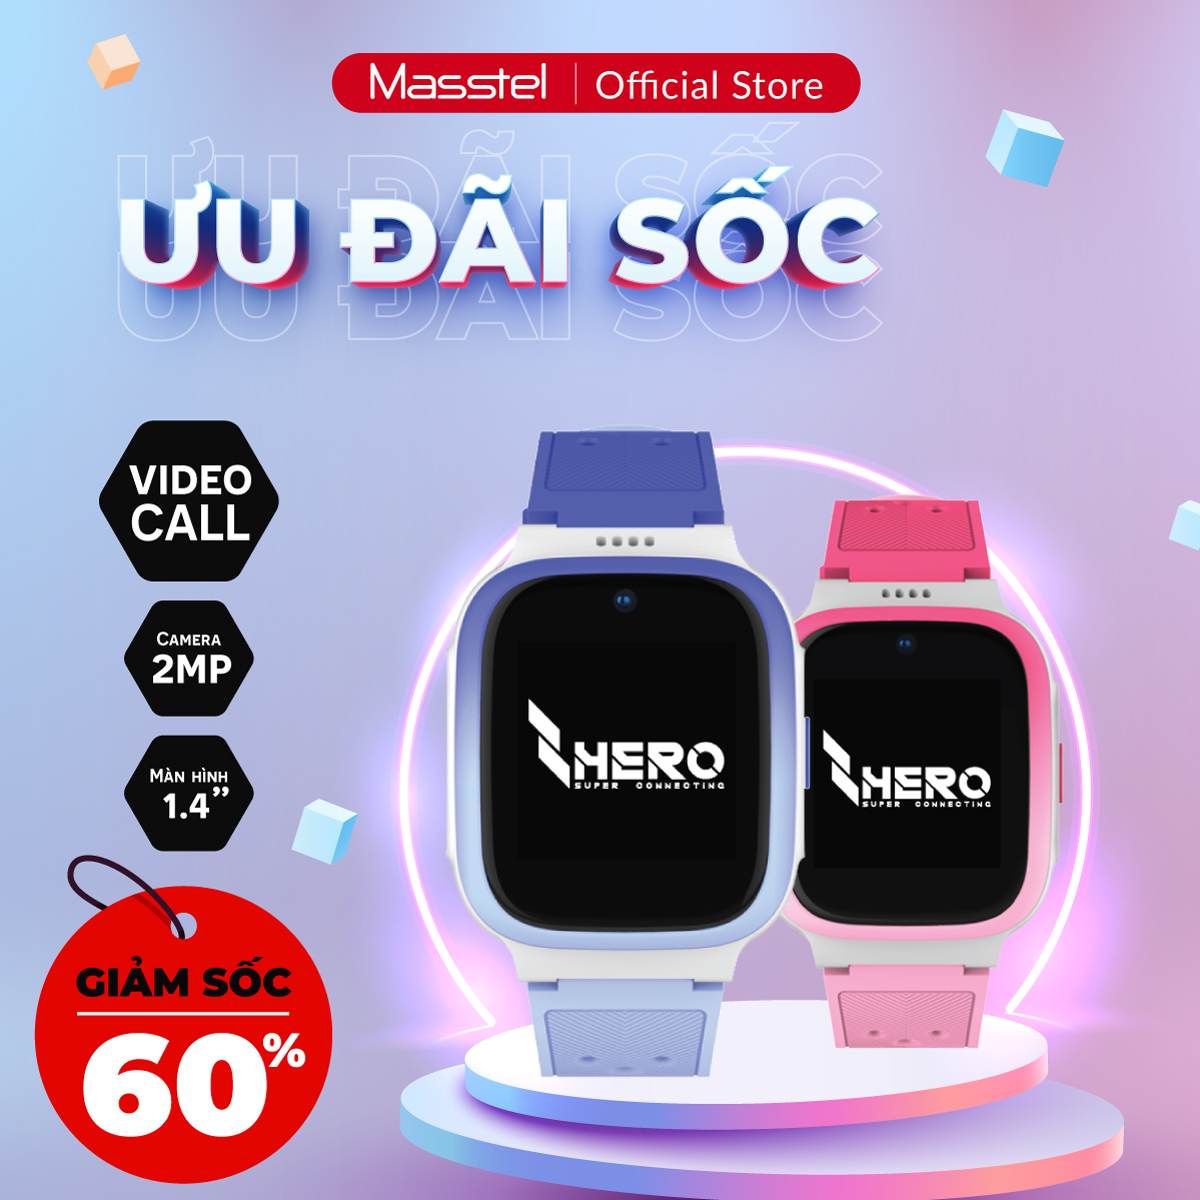 Đế sạc đồng hồ masstel Super Hero - Chính hãng - Giao nhanh - Hỗ trợ vận  chuyển - Kiểm tra 100% trước khi ship | Shopee Việt Nam